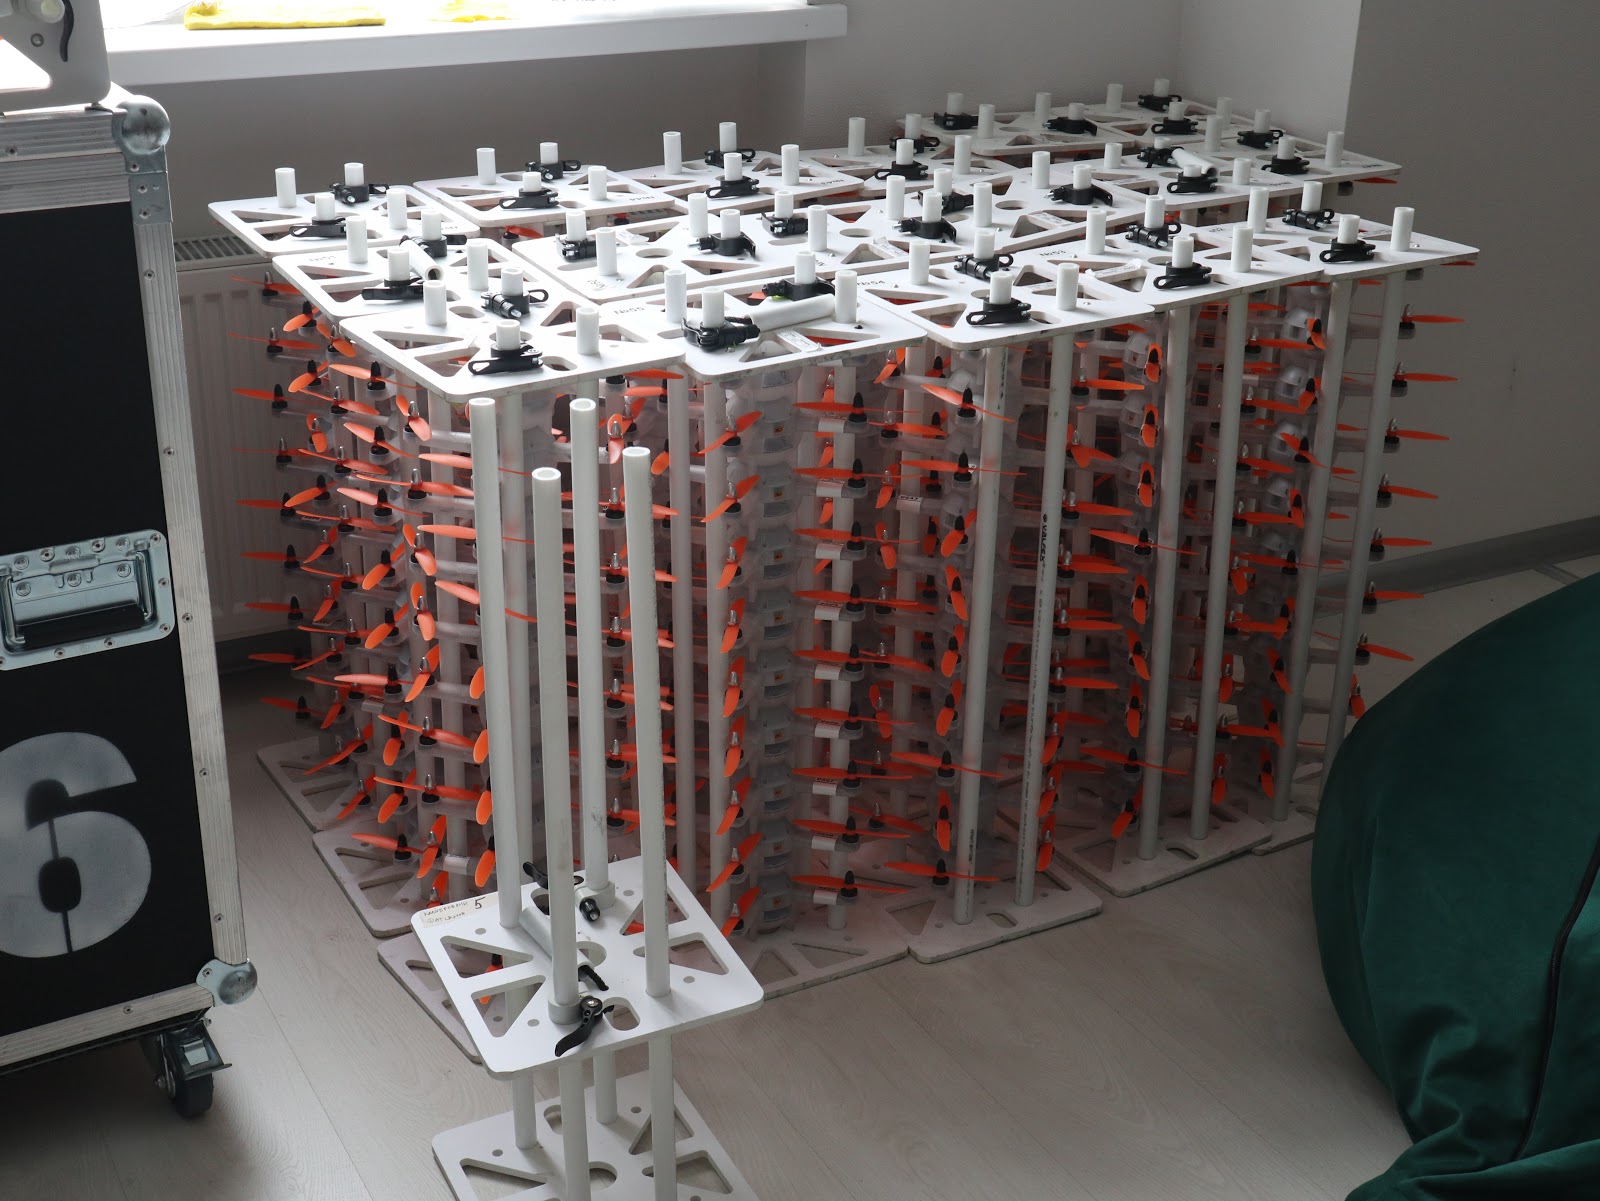 Так выглядят рамки для перевозки дронов — каждая вмещает по 10 штук